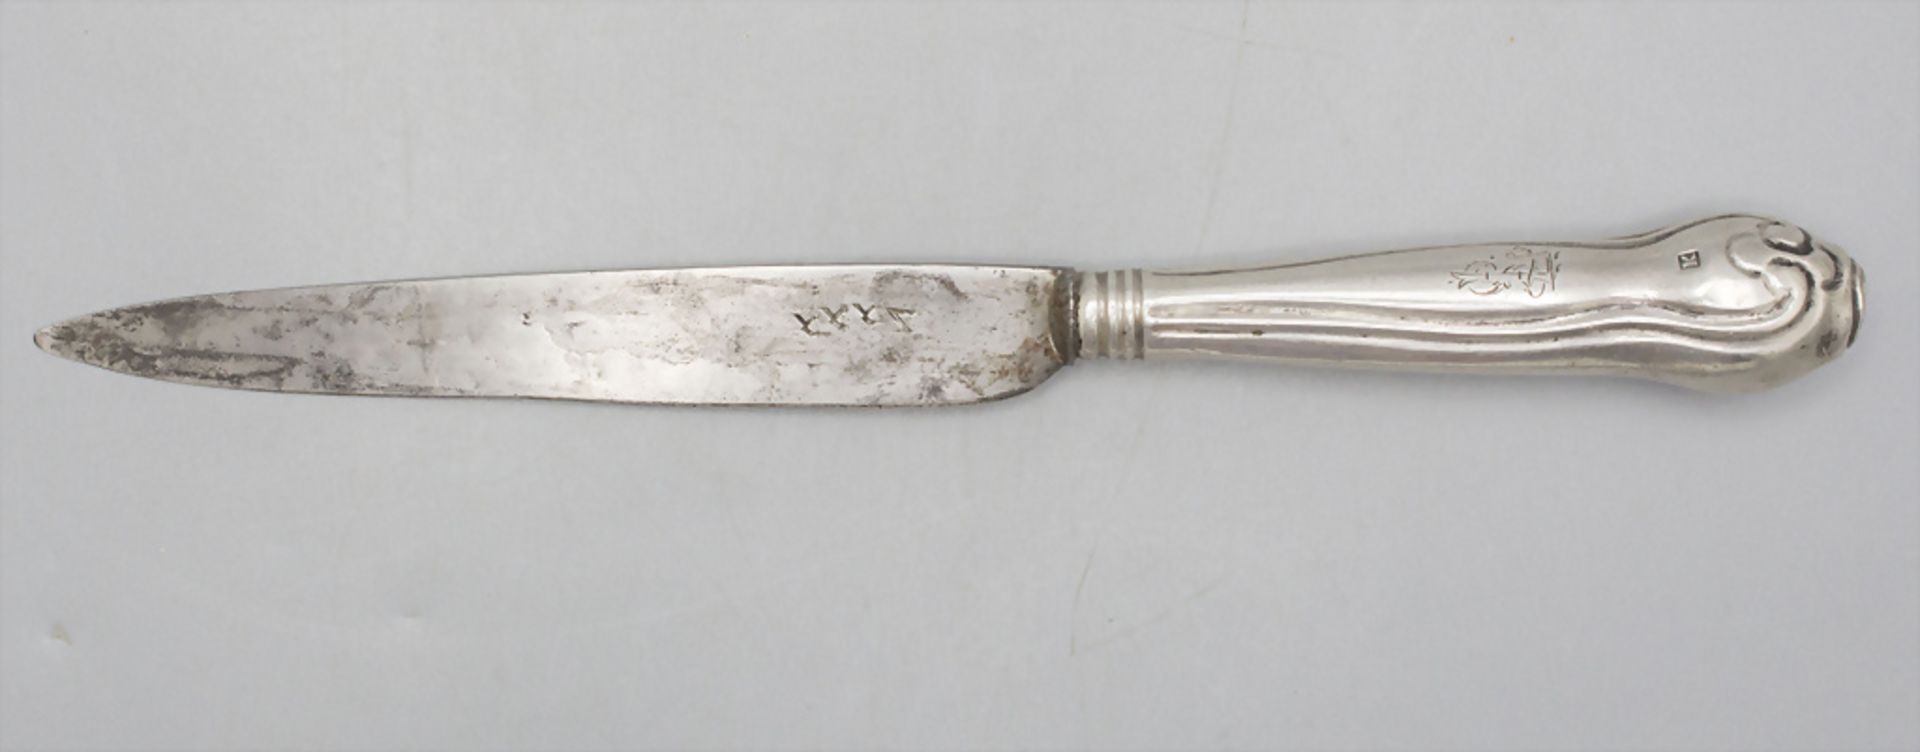 Messer / A knife, deutsch, wohl Heilbronn, 1. Hälfte 18. Jh.